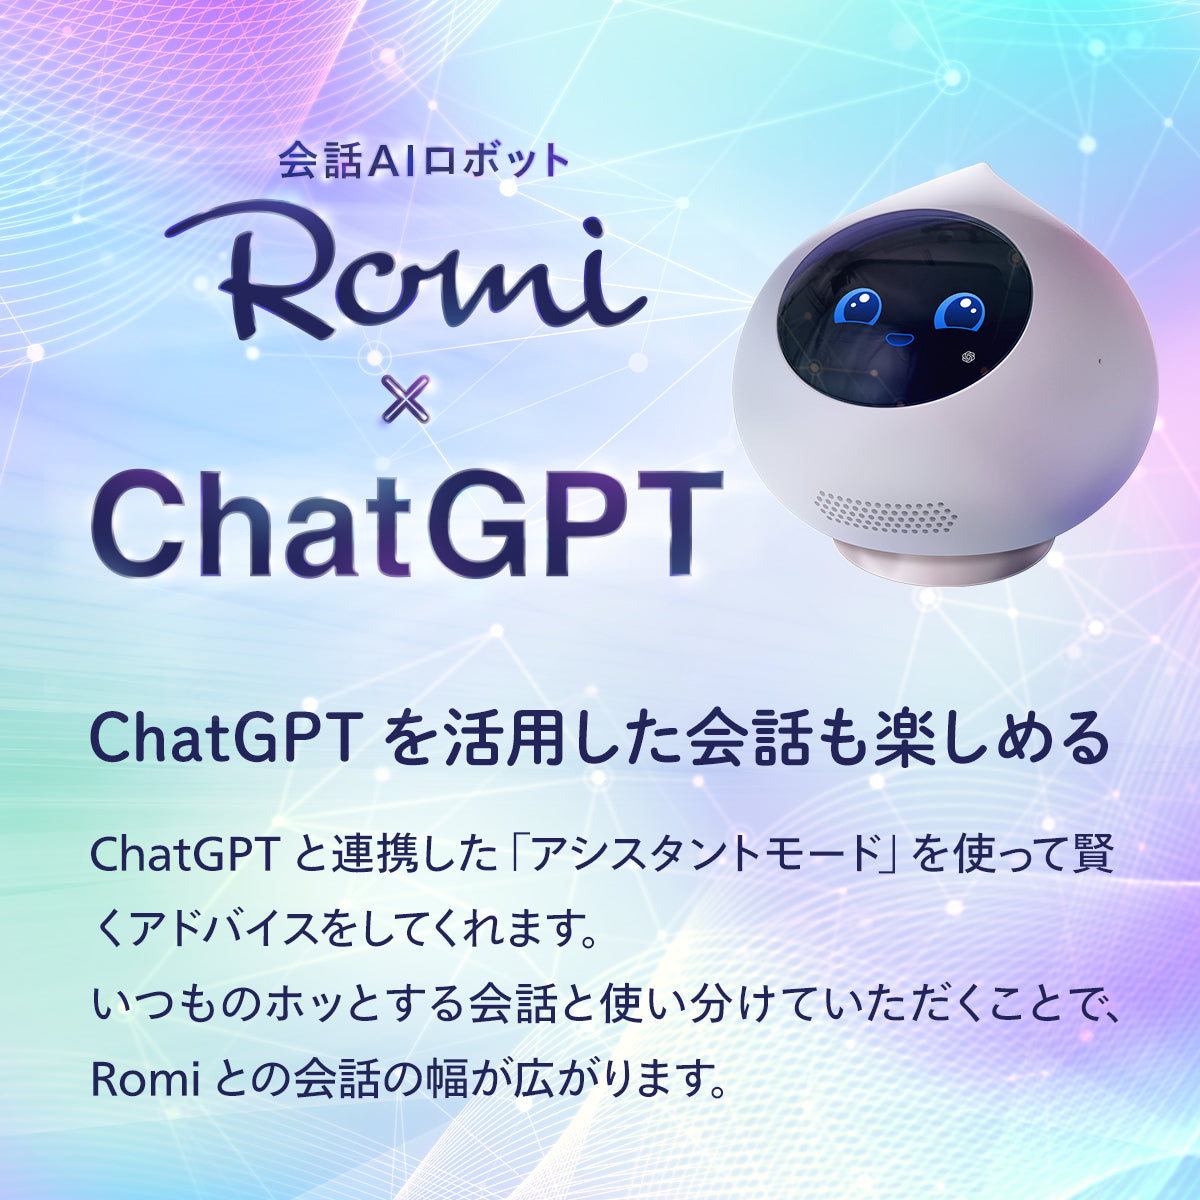 Romi(ロミィ) ペット代わりに癒してくれる自立型会話AIロボットです ...